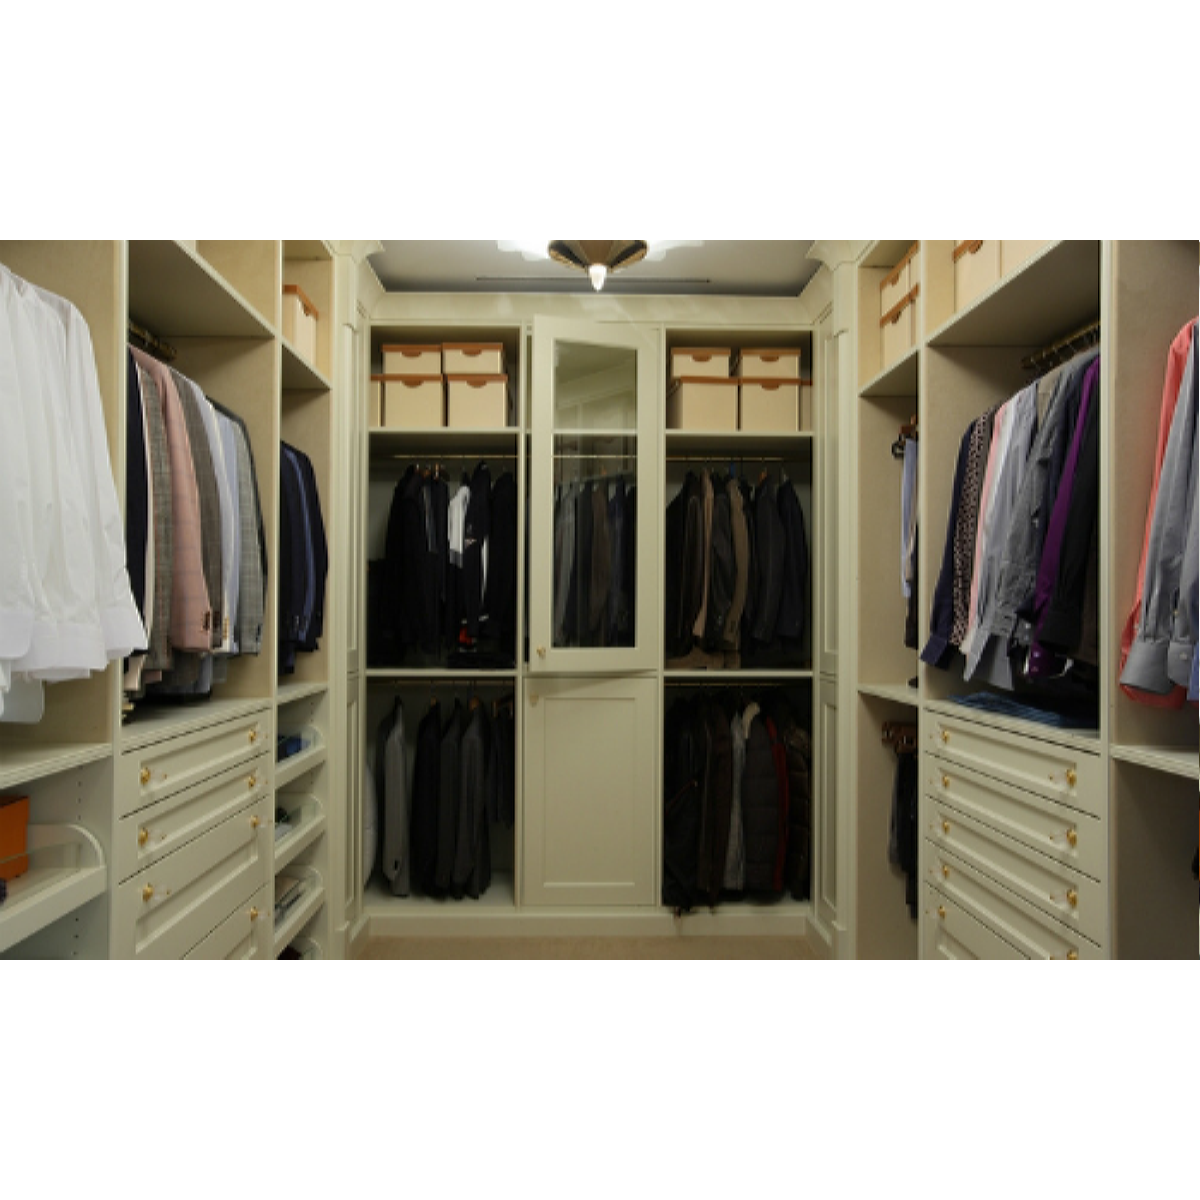 Верхняя одежда в гардеробной комнате